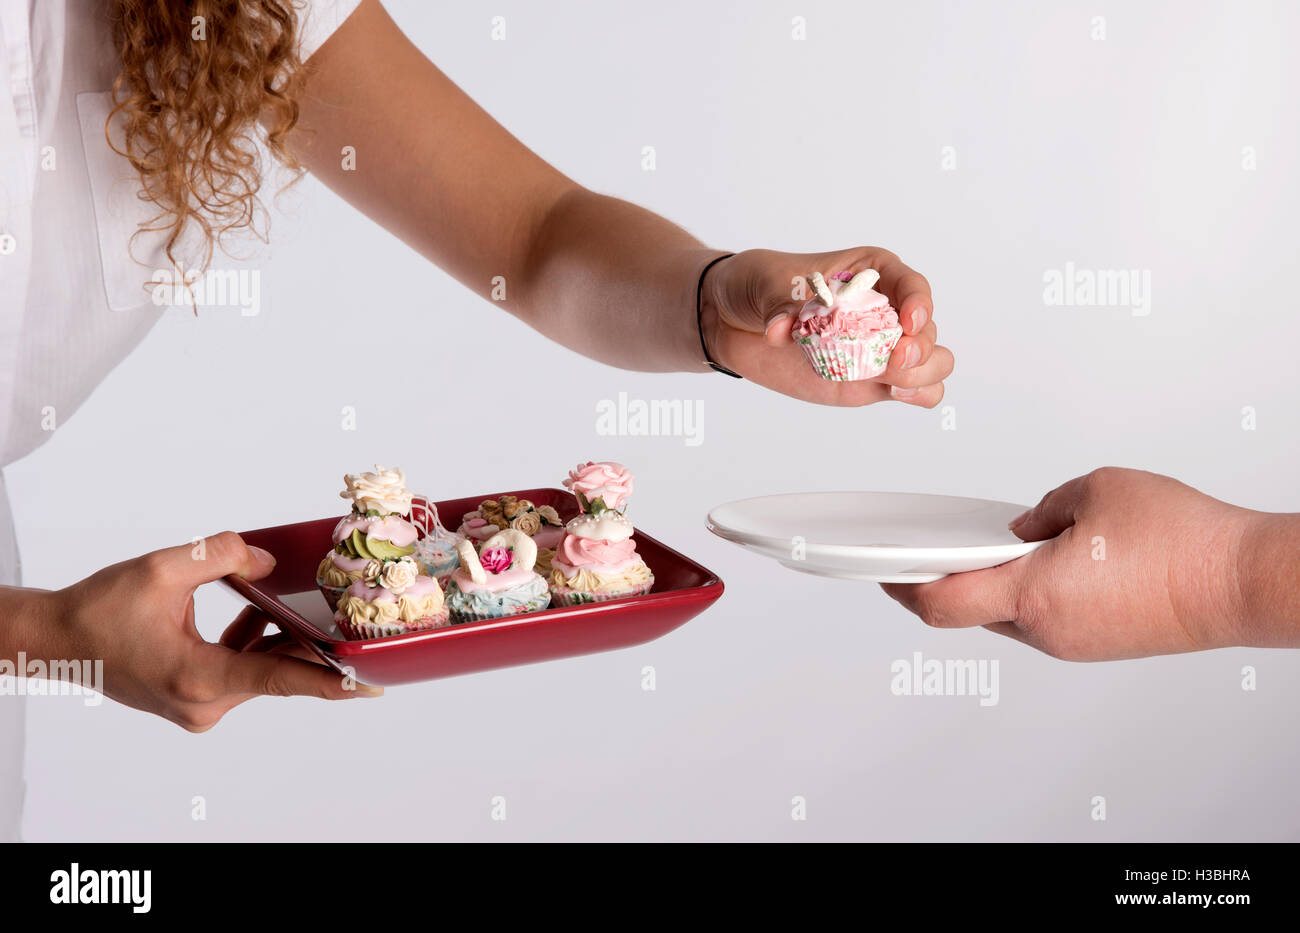 Une serveuse servant un plateau de gâteaux de fées Banque D'Images